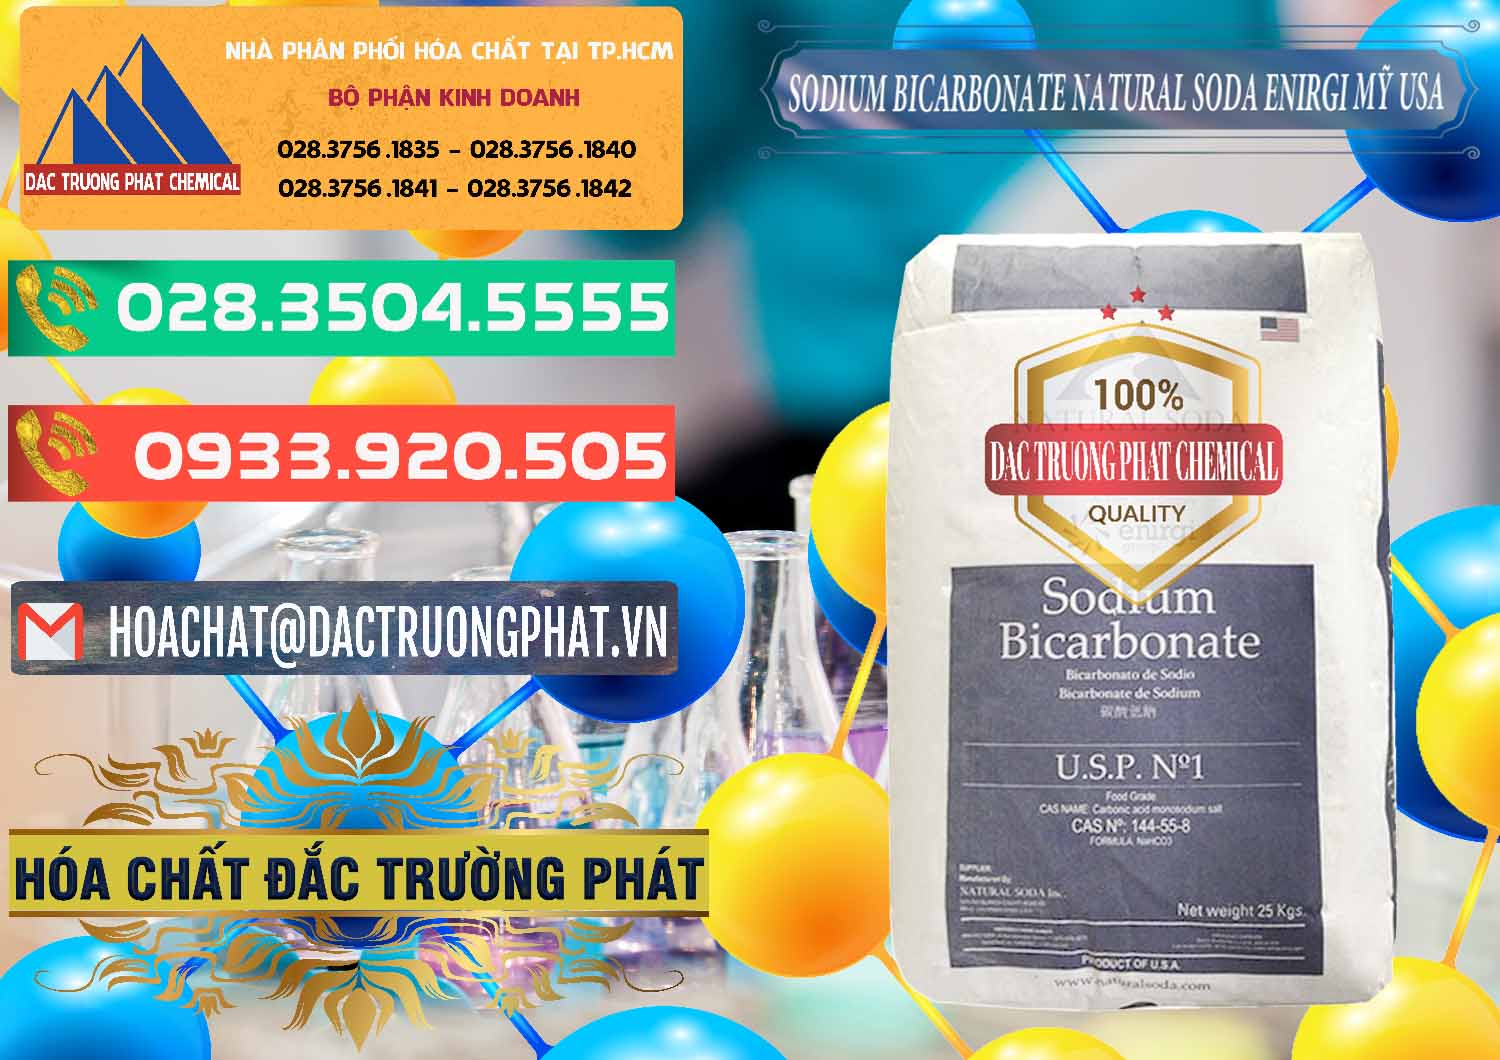 Cty chuyên cung ứng _ bán Sodium Bicarbonate – Bicar NaHCO3 Food Grade Natural Soda Enirgi Mỹ USA - 0257 - Chuyên phân phối _ cung cấp hóa chất tại TP.HCM - congtyhoachat.com.vn